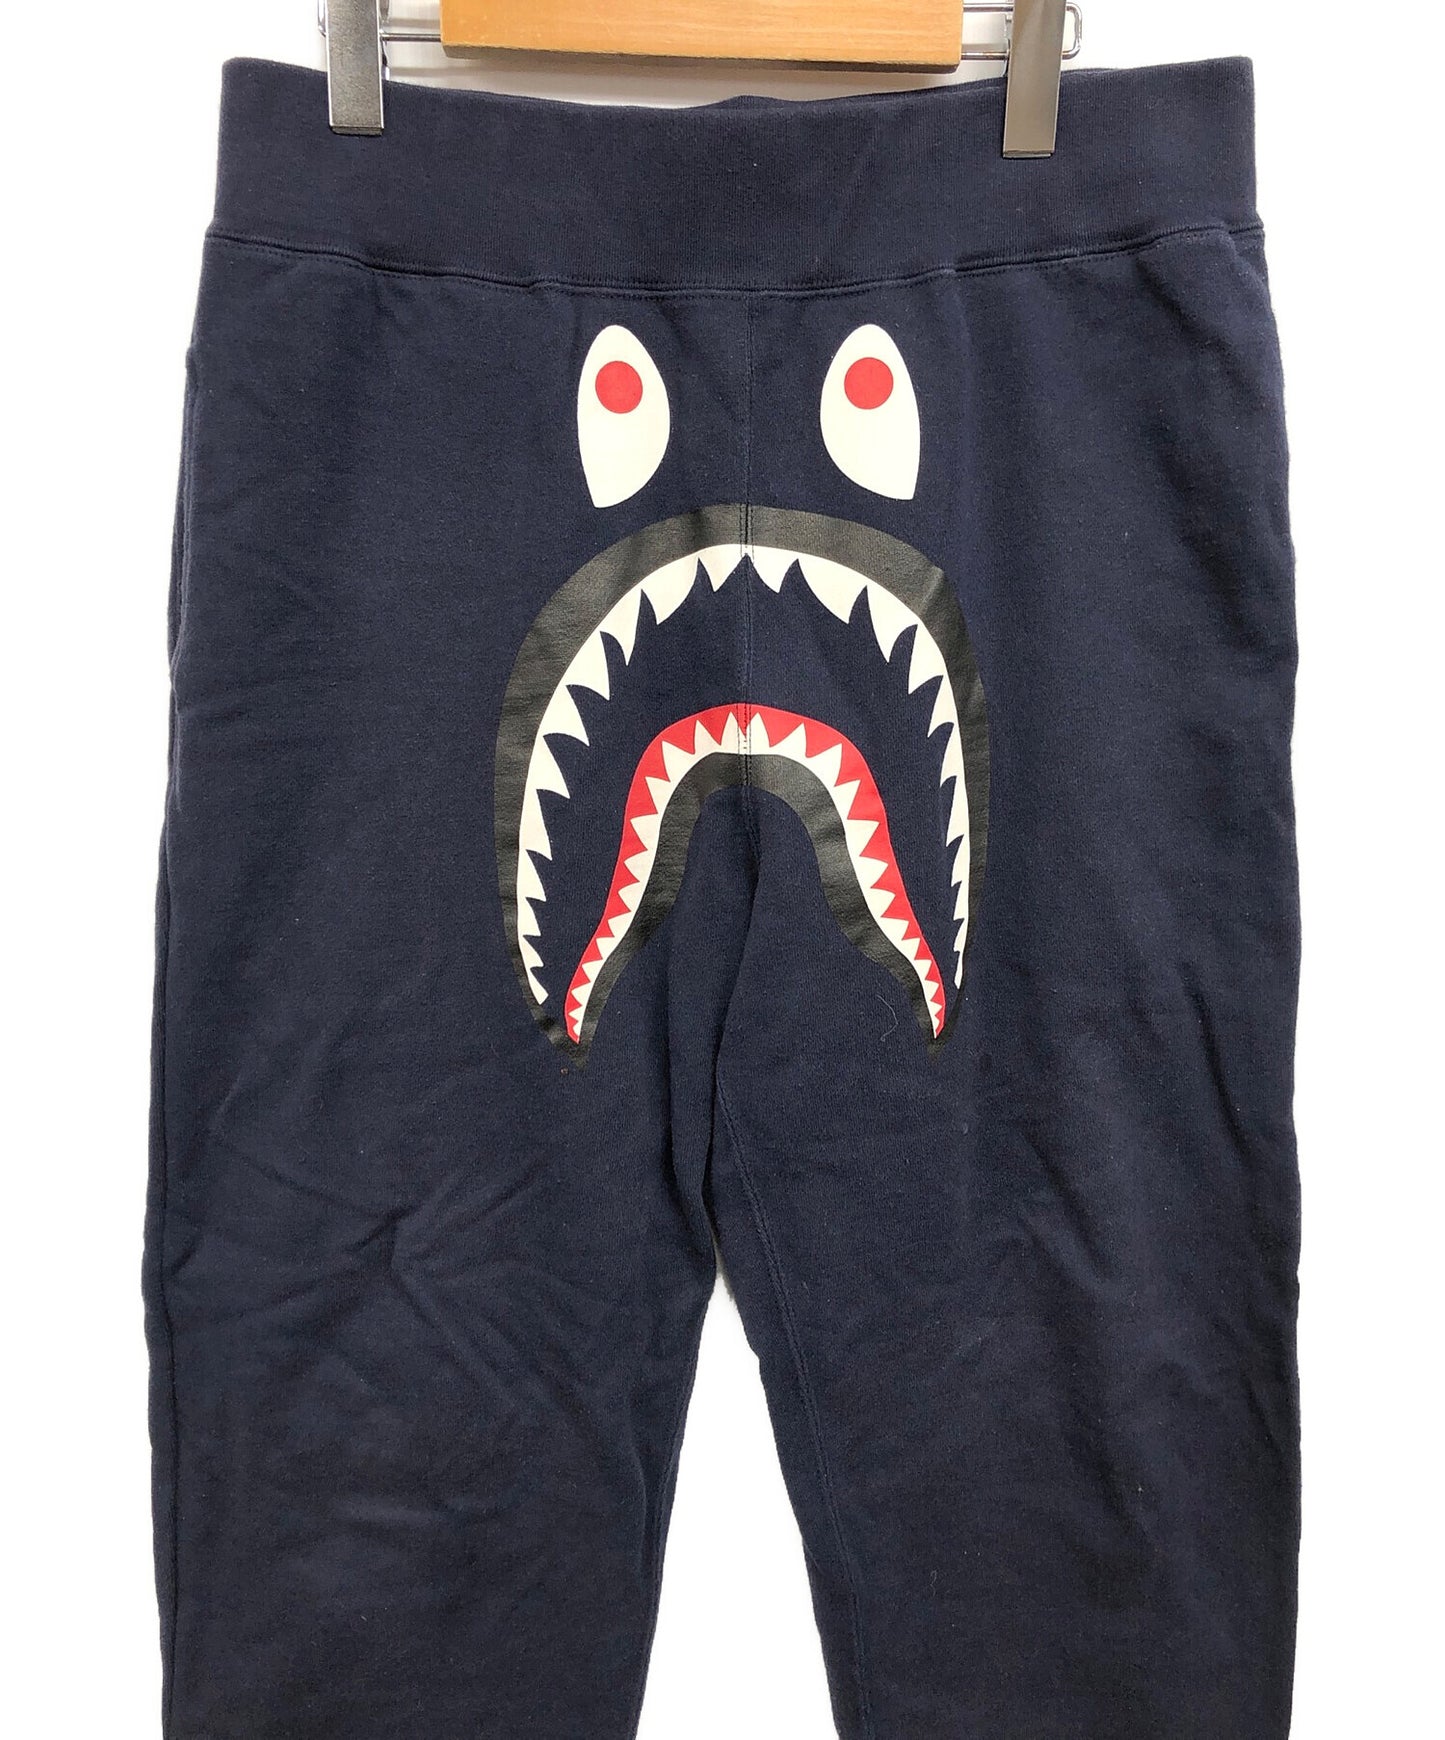 沐浴猿鲨鱼印刷运动裤001PTD801001X